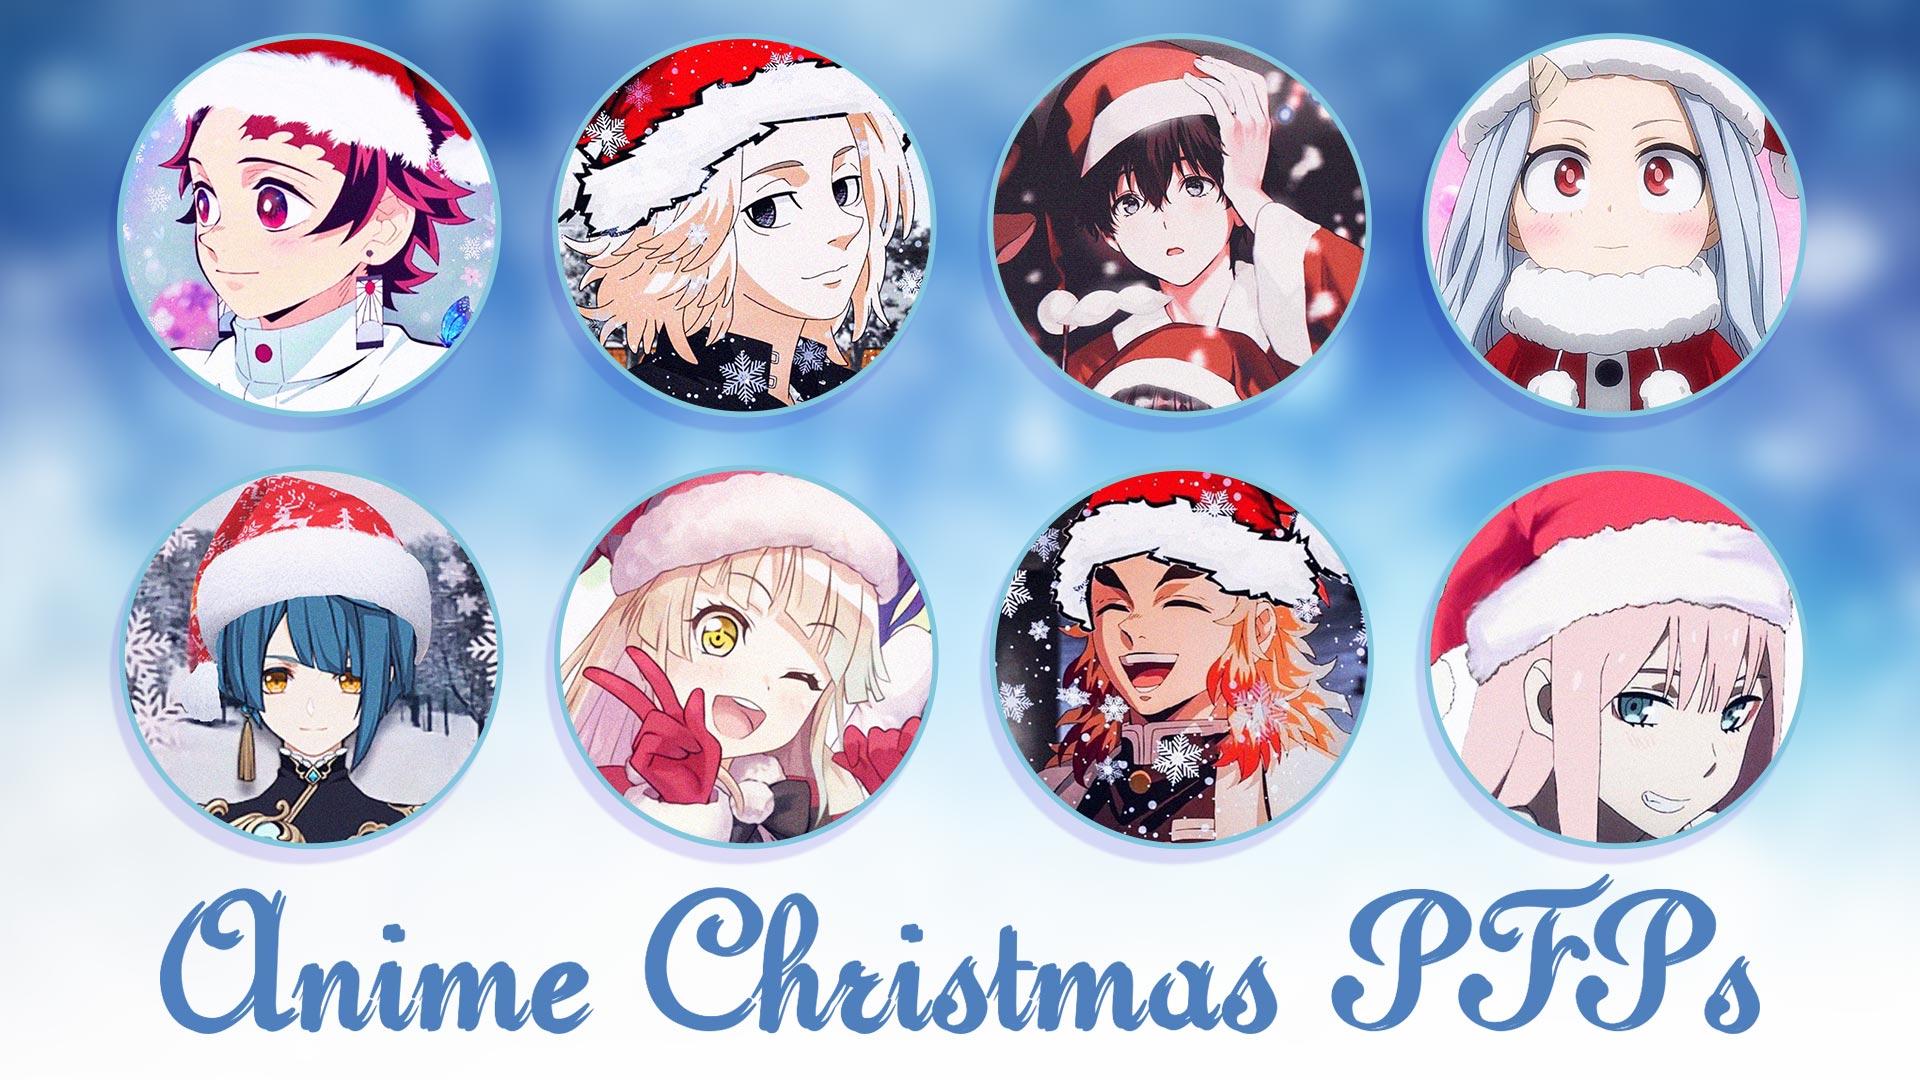 Christmas Anime Couple Wallpapers - Top Free Christmas Anime Couple ...